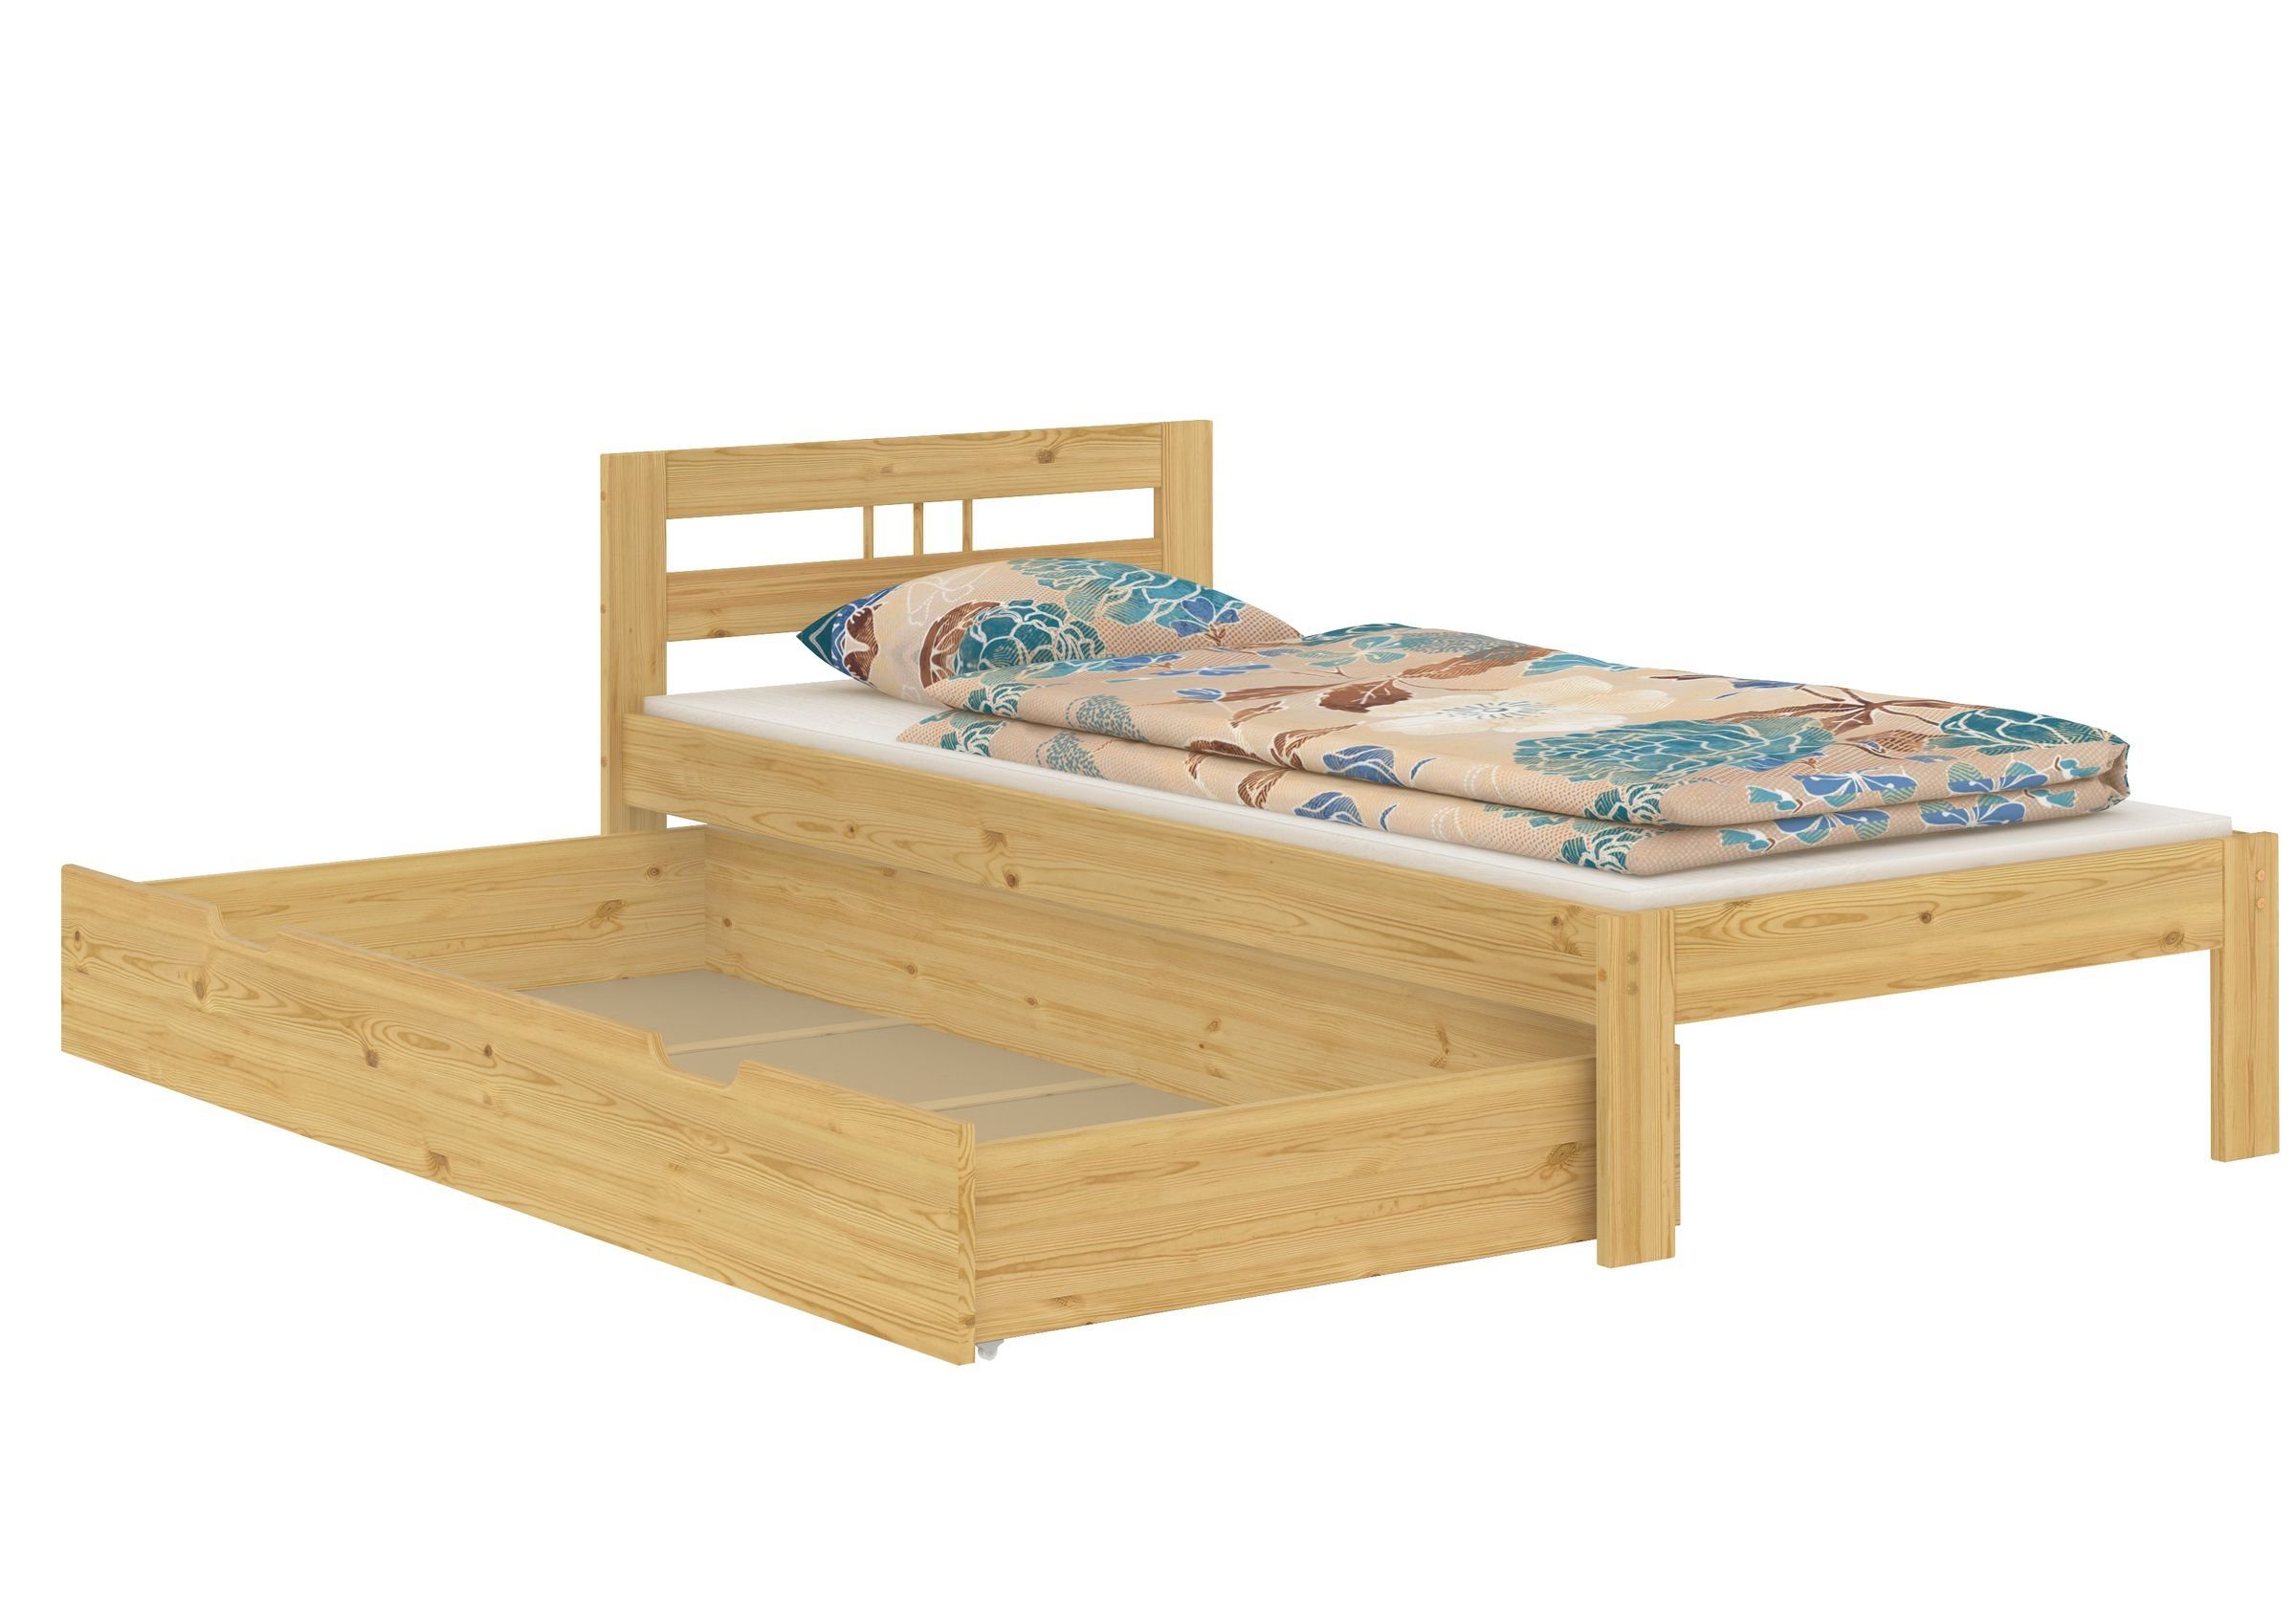 100x200 Bett ERST-HOLZ ohne Futonbett lackiert Kieferfarblos Jugendbett Zubehör, Einzelbett Holzbett Kiefer